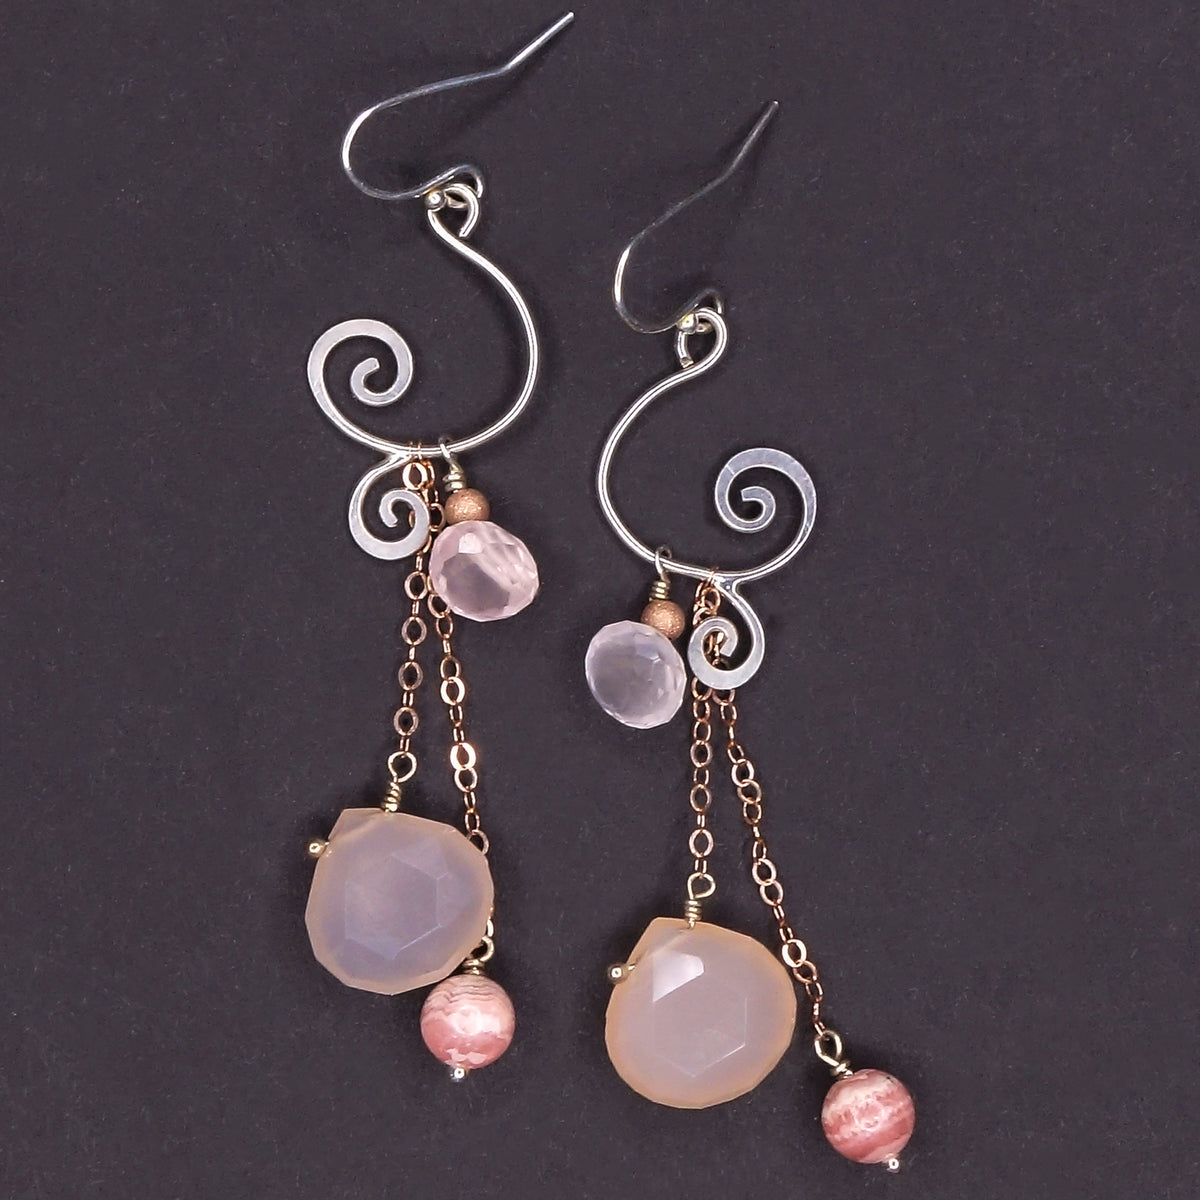 Pink, Powerful, Feminine, Fierce: rose quartz + rhodochrosite earrings